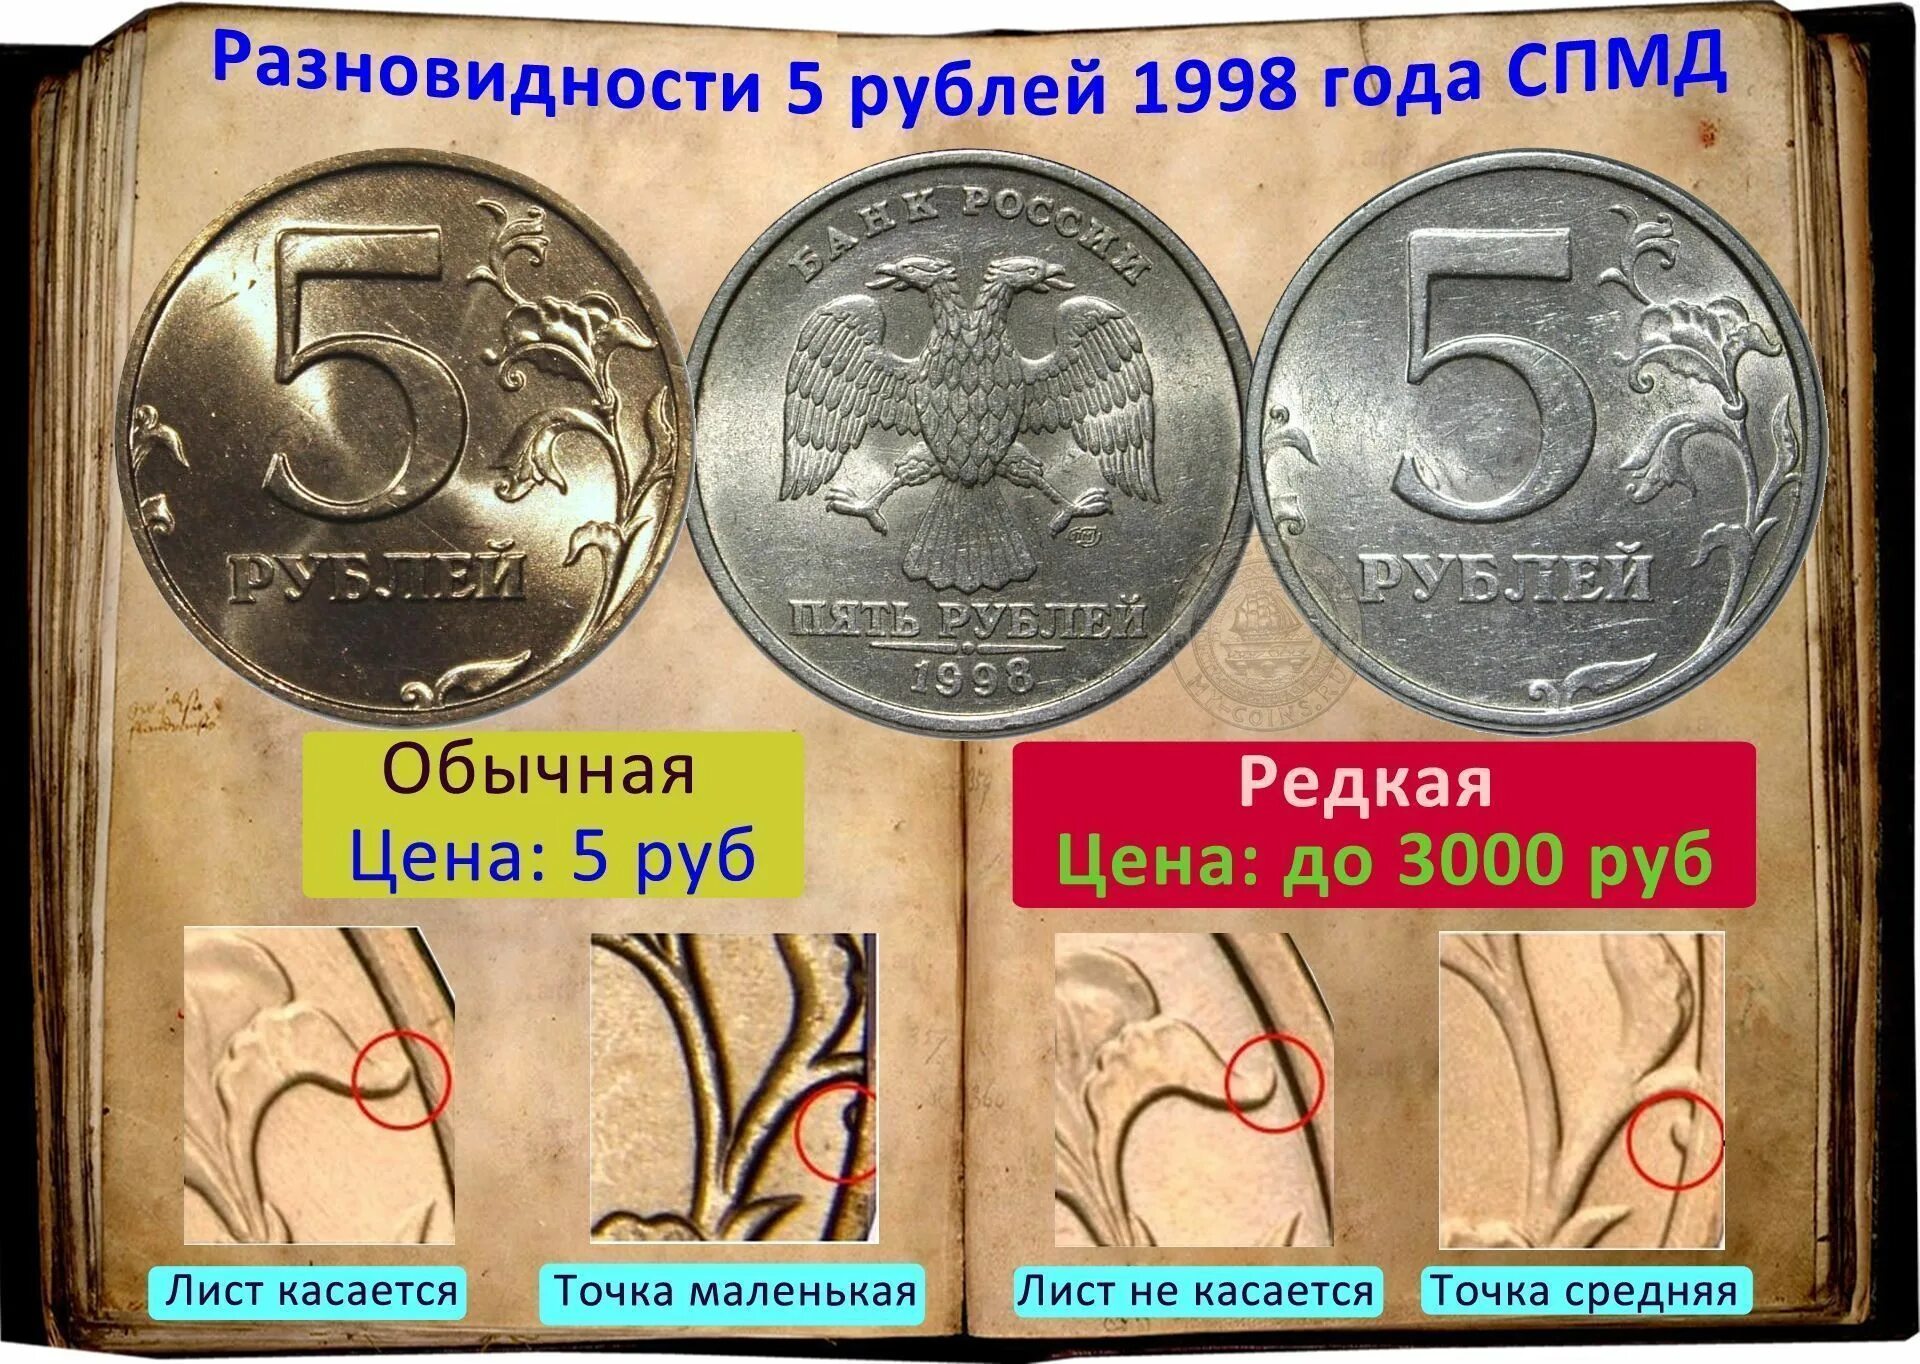 В кошельке лежало 92 рубля мелочи пятирублевые. Редкая монета 5 рублей 1998 года СПМД. Монеты СПМД 1998 год 5 рублей. Монета 5 рублей 1998 СПМД. Редкая монета 5 рублей 1998.